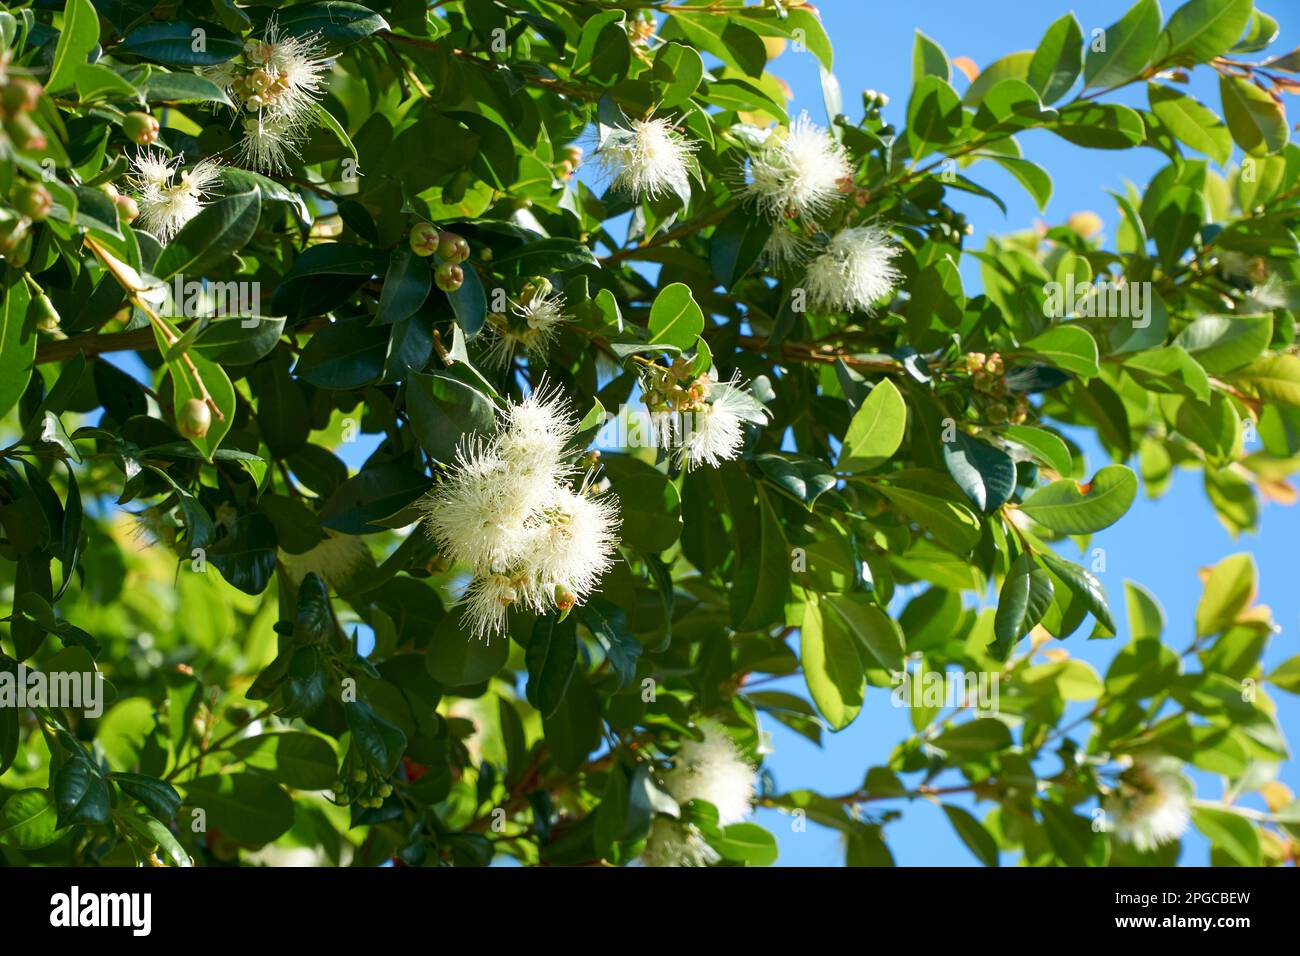 Syzygium smithii an Australian evergreen in flower Stock Photo